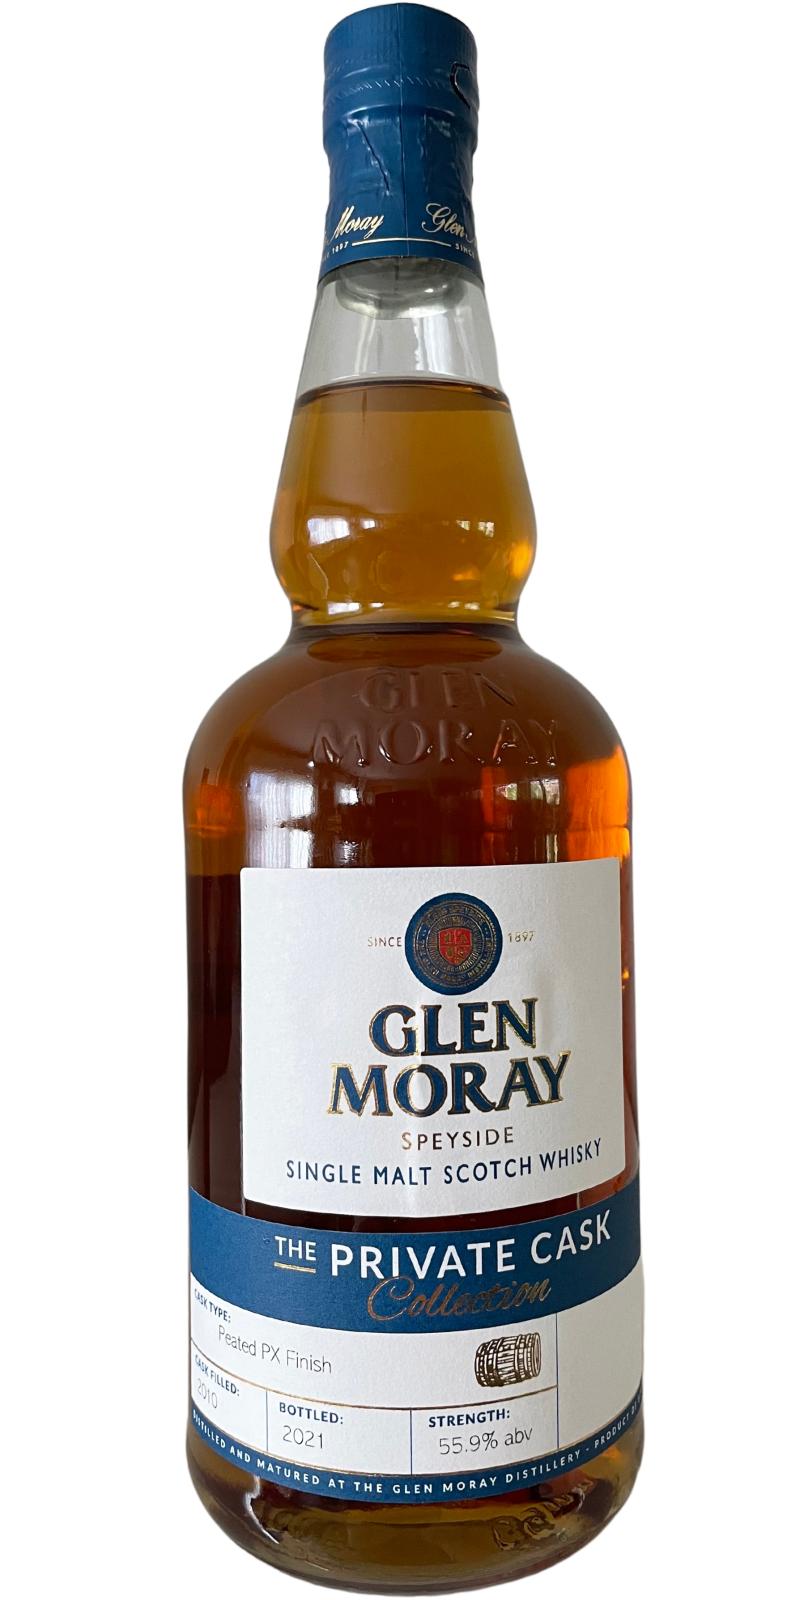 Glen Moray 2010